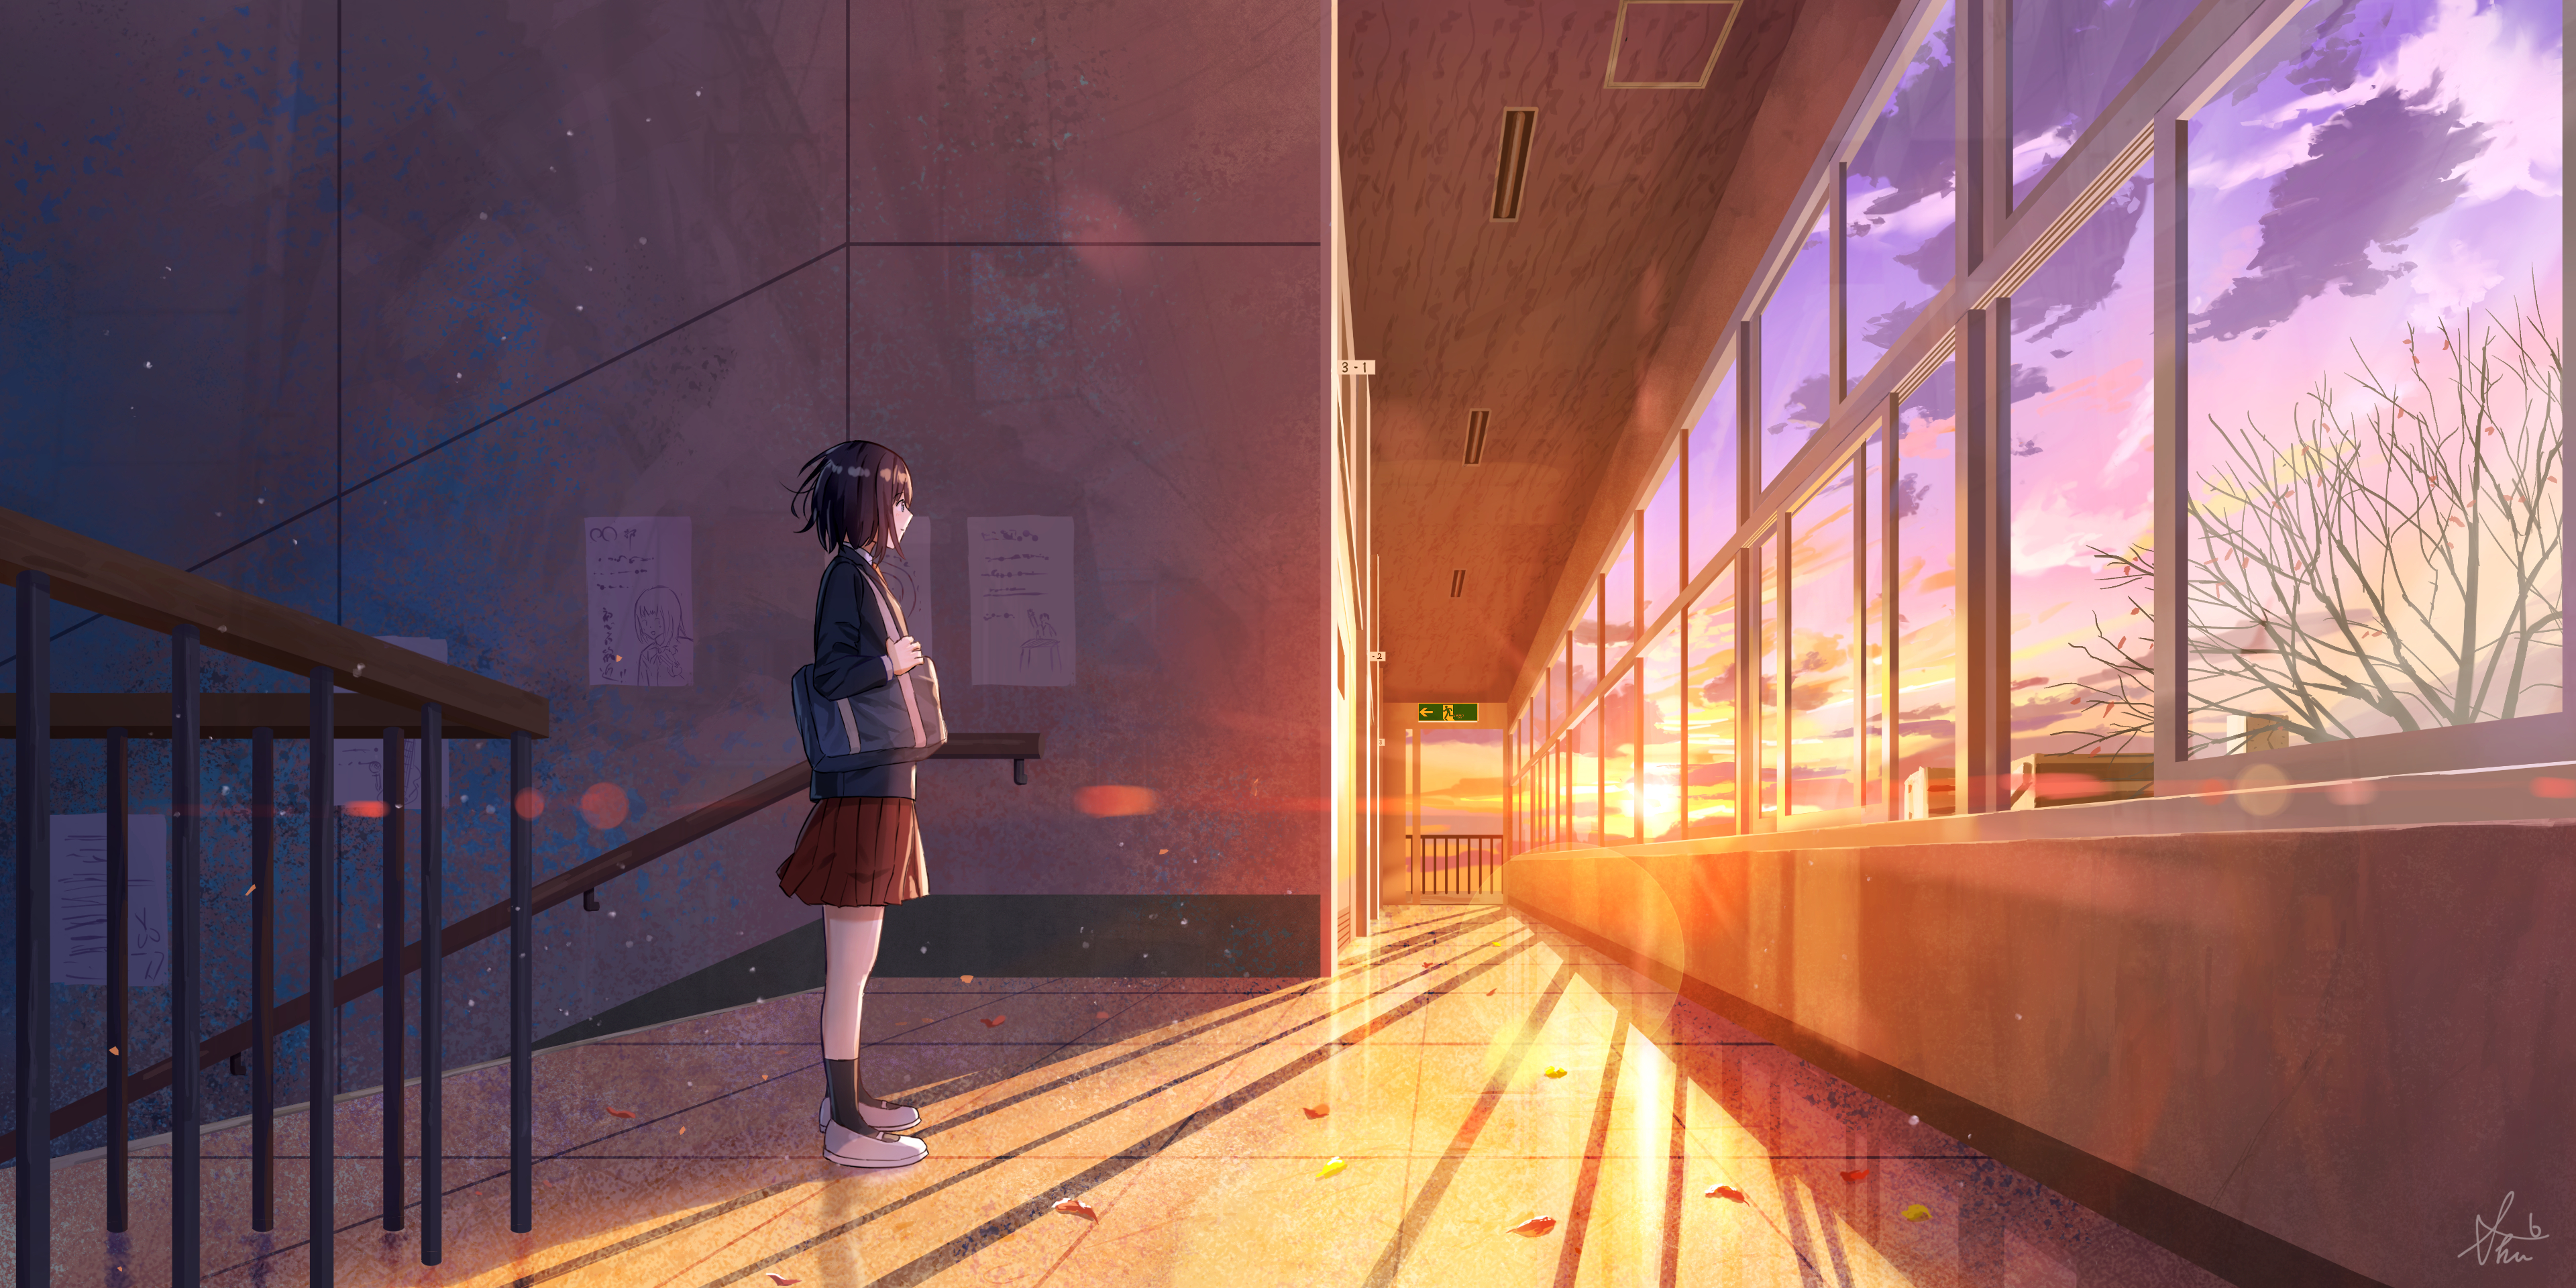 Handy-Wallpaper Mädchen, Sonnenuntergang, Animes kostenlos herunterladen.